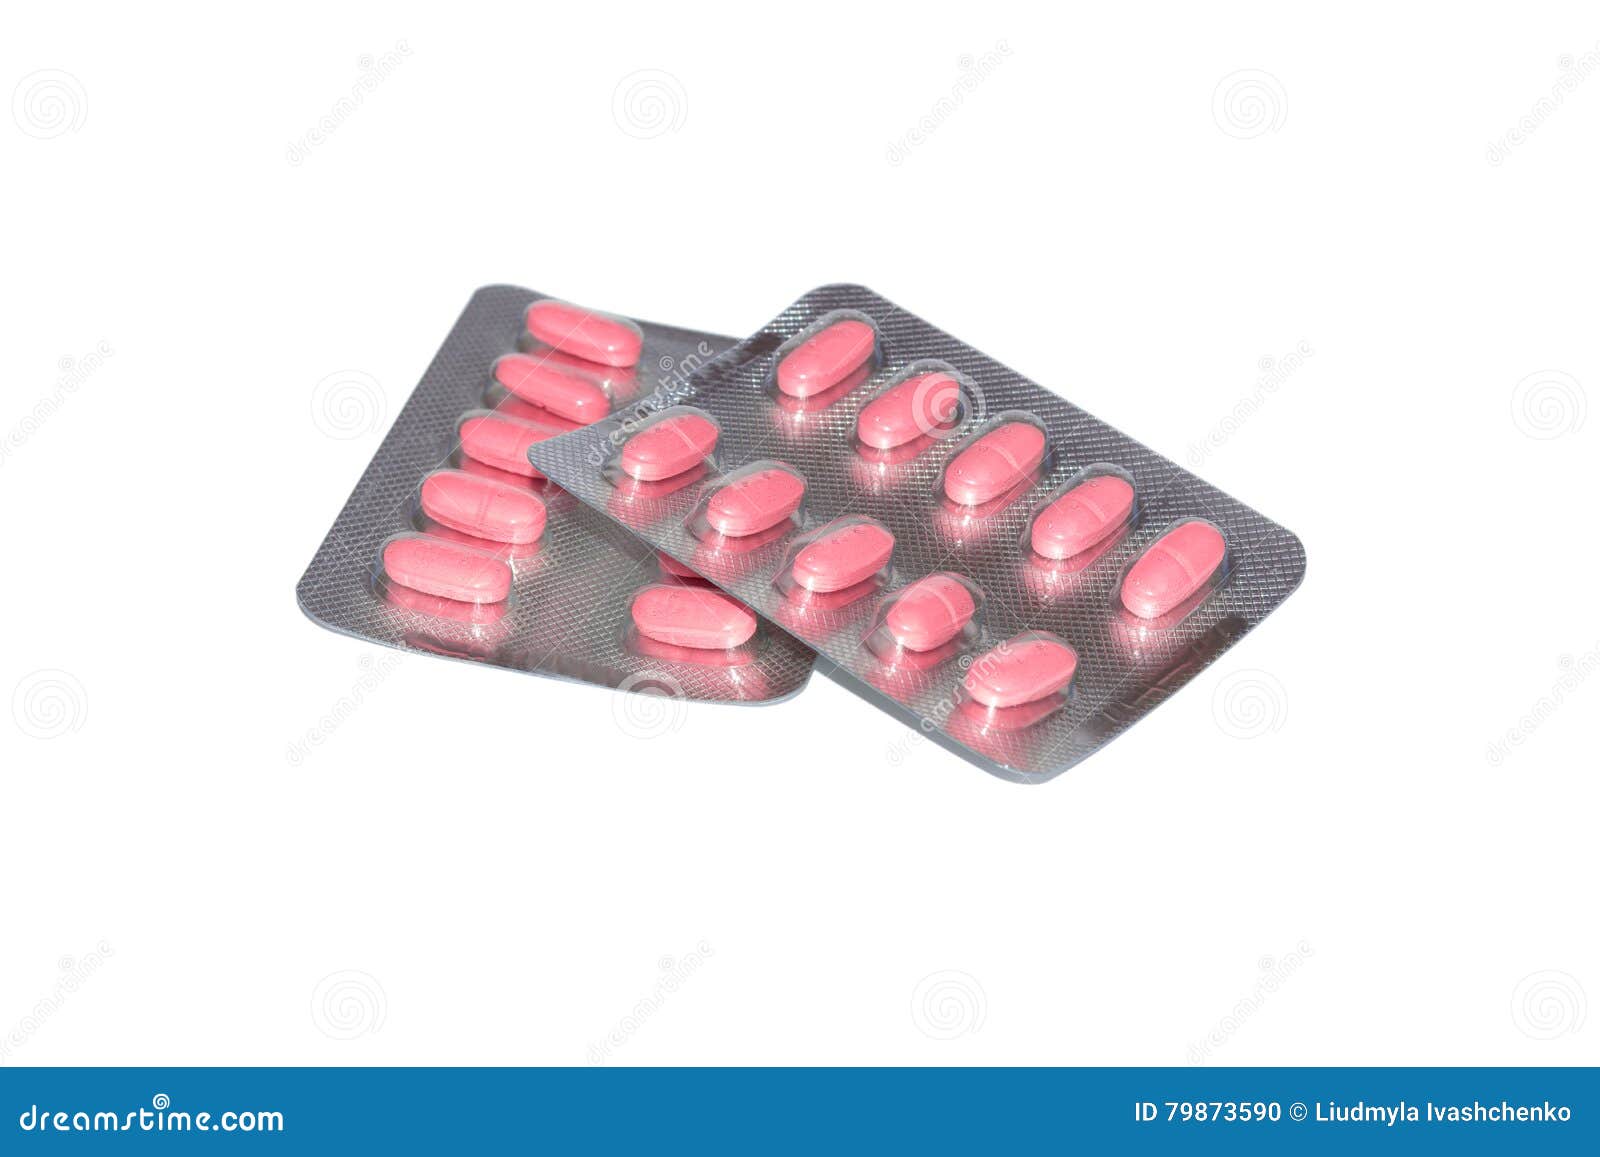 Розовые таблетки от температуры. Розовые таблетки. Противовирусные розовые таблетки. Овальные таблетки розового цвета. Розовые таблетки в блистере.